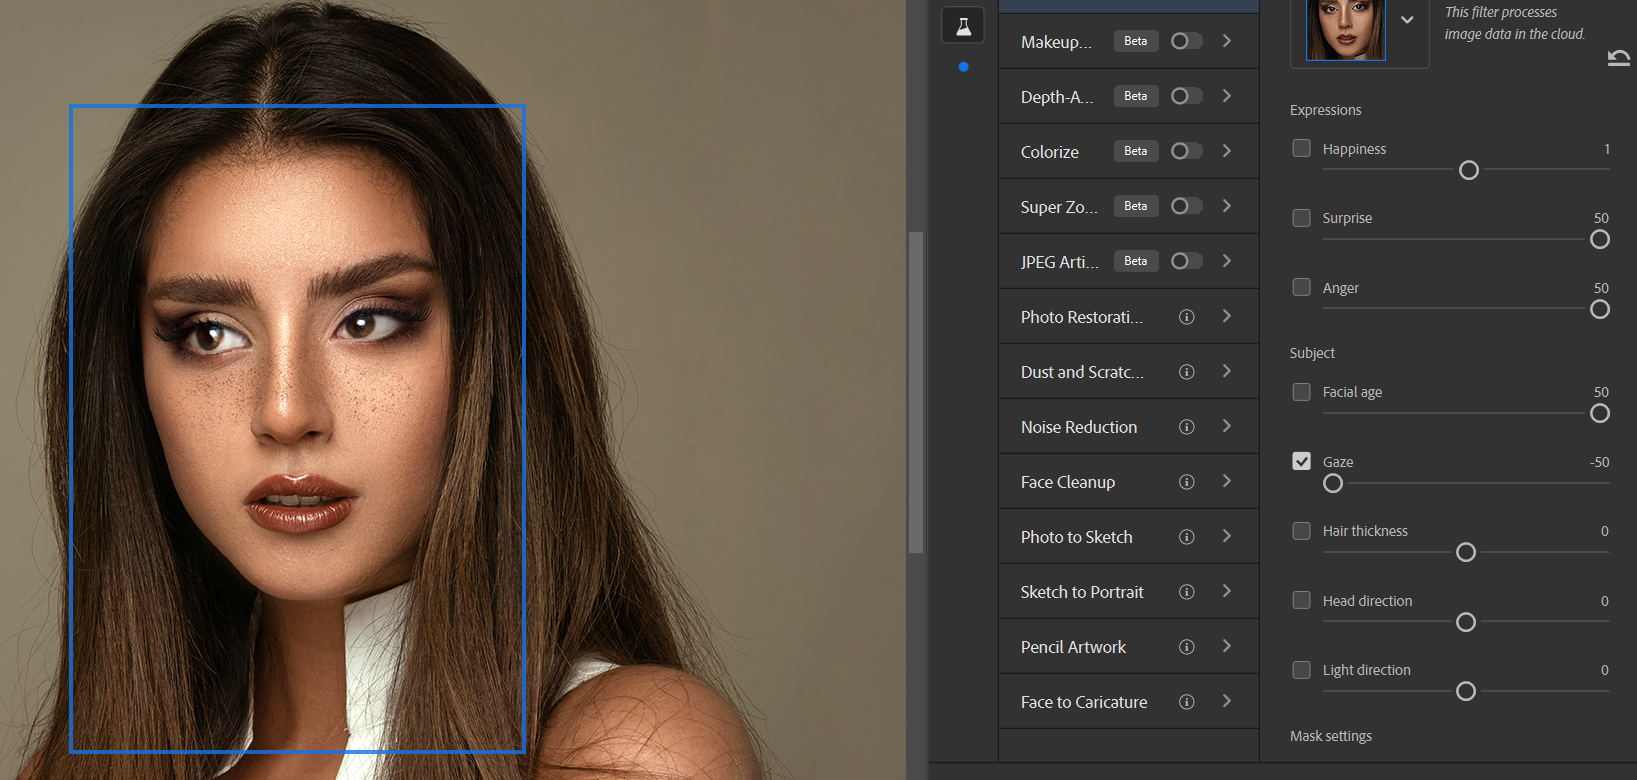 19 Gaze 50 - Come utilizzare la funzione Ritratto intelligente di Photoshop: una guida per principianti